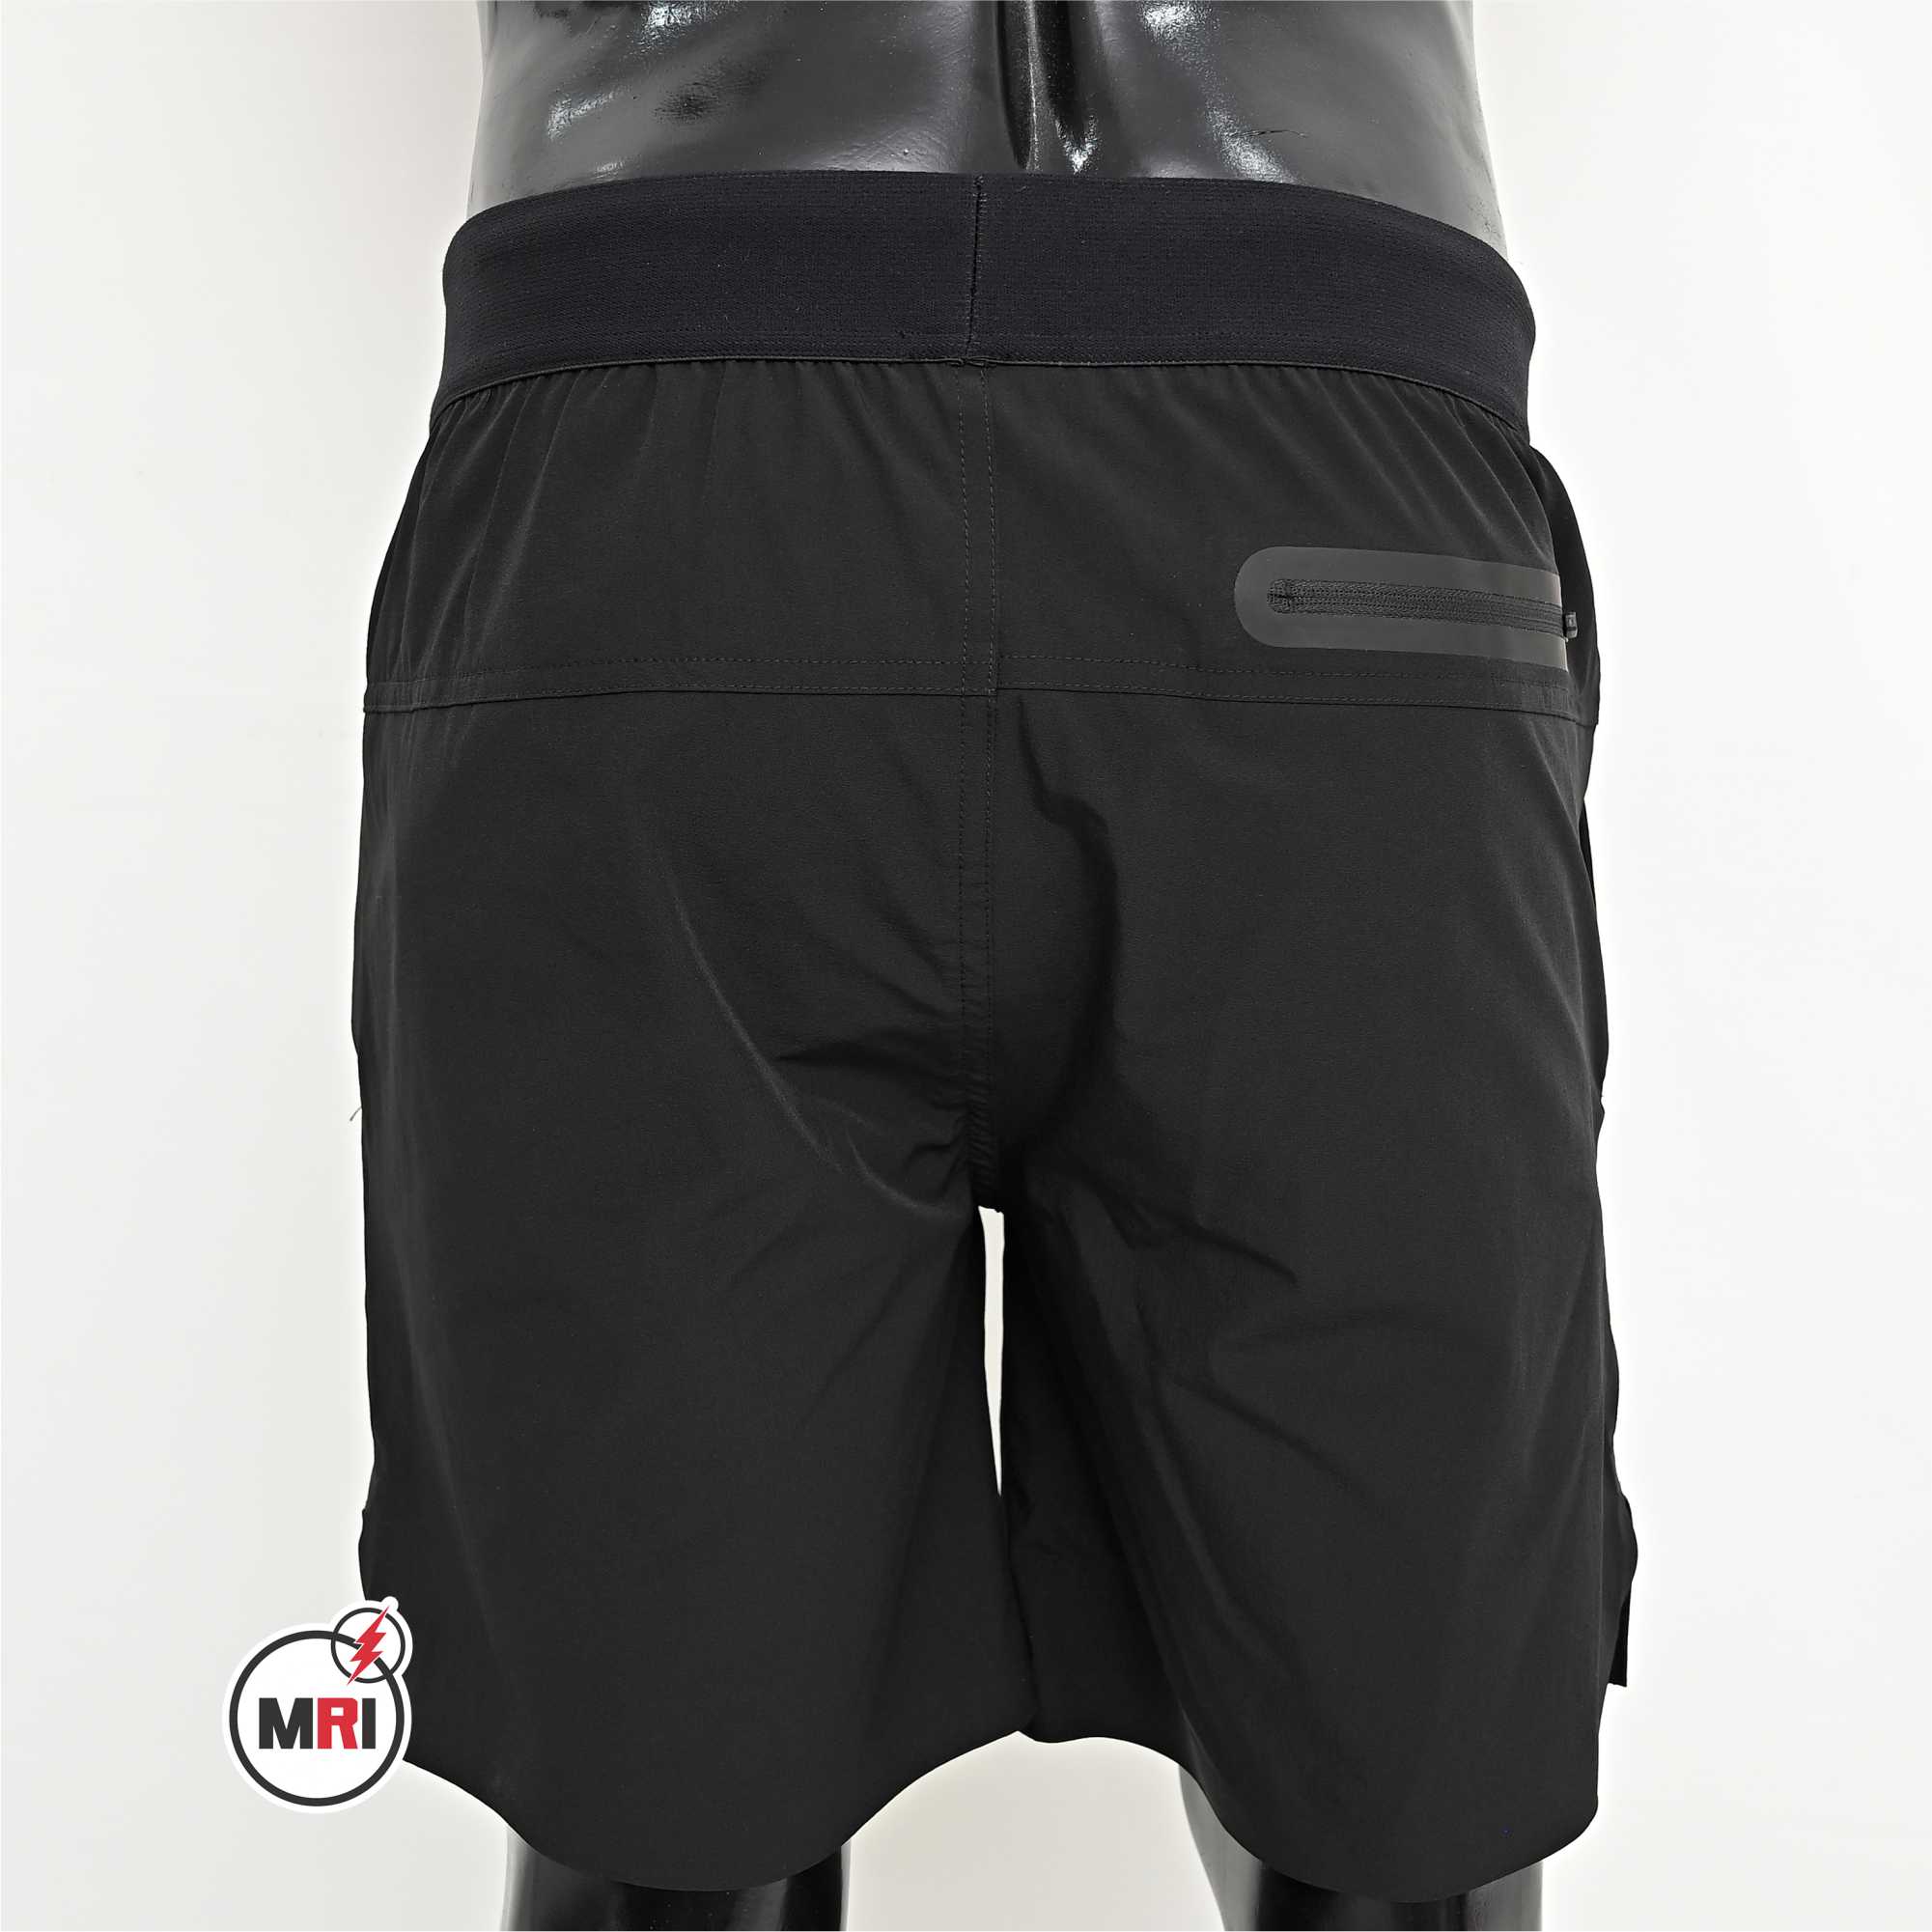 Customized Black Shorts